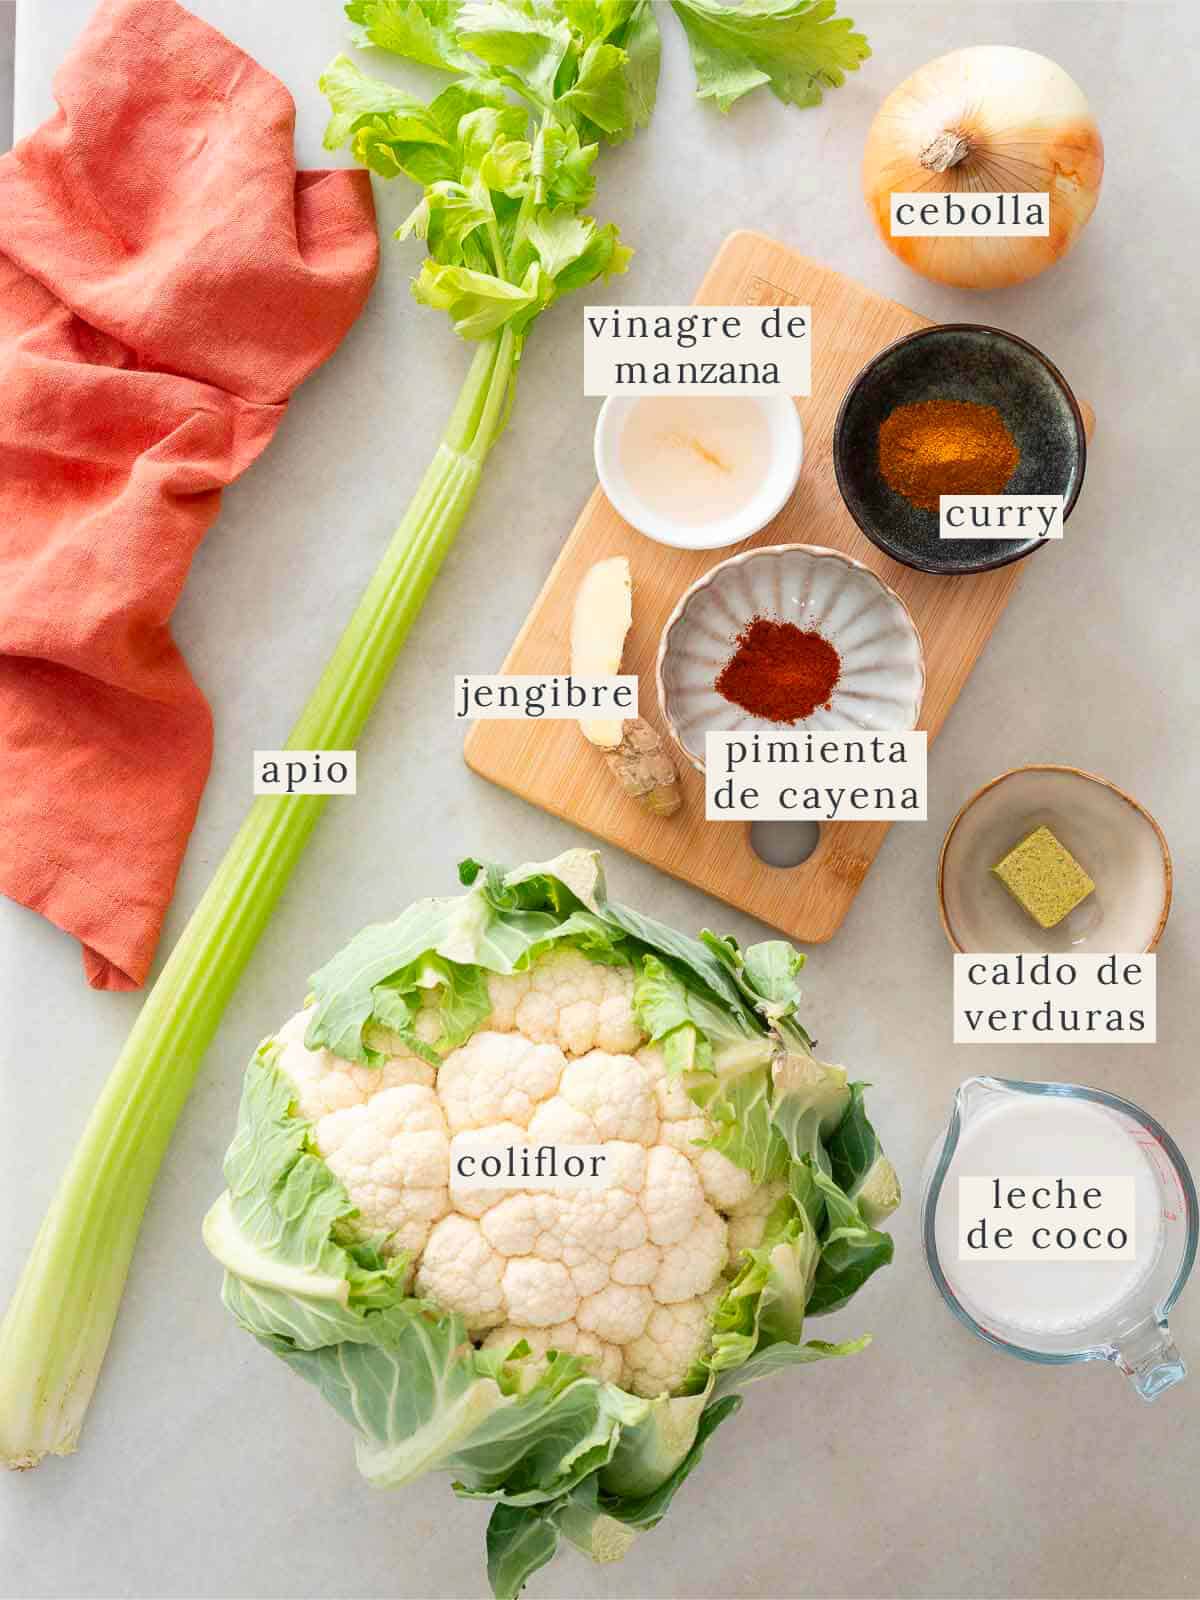 ingredientes para prepara sopa de coliflor cremosa.